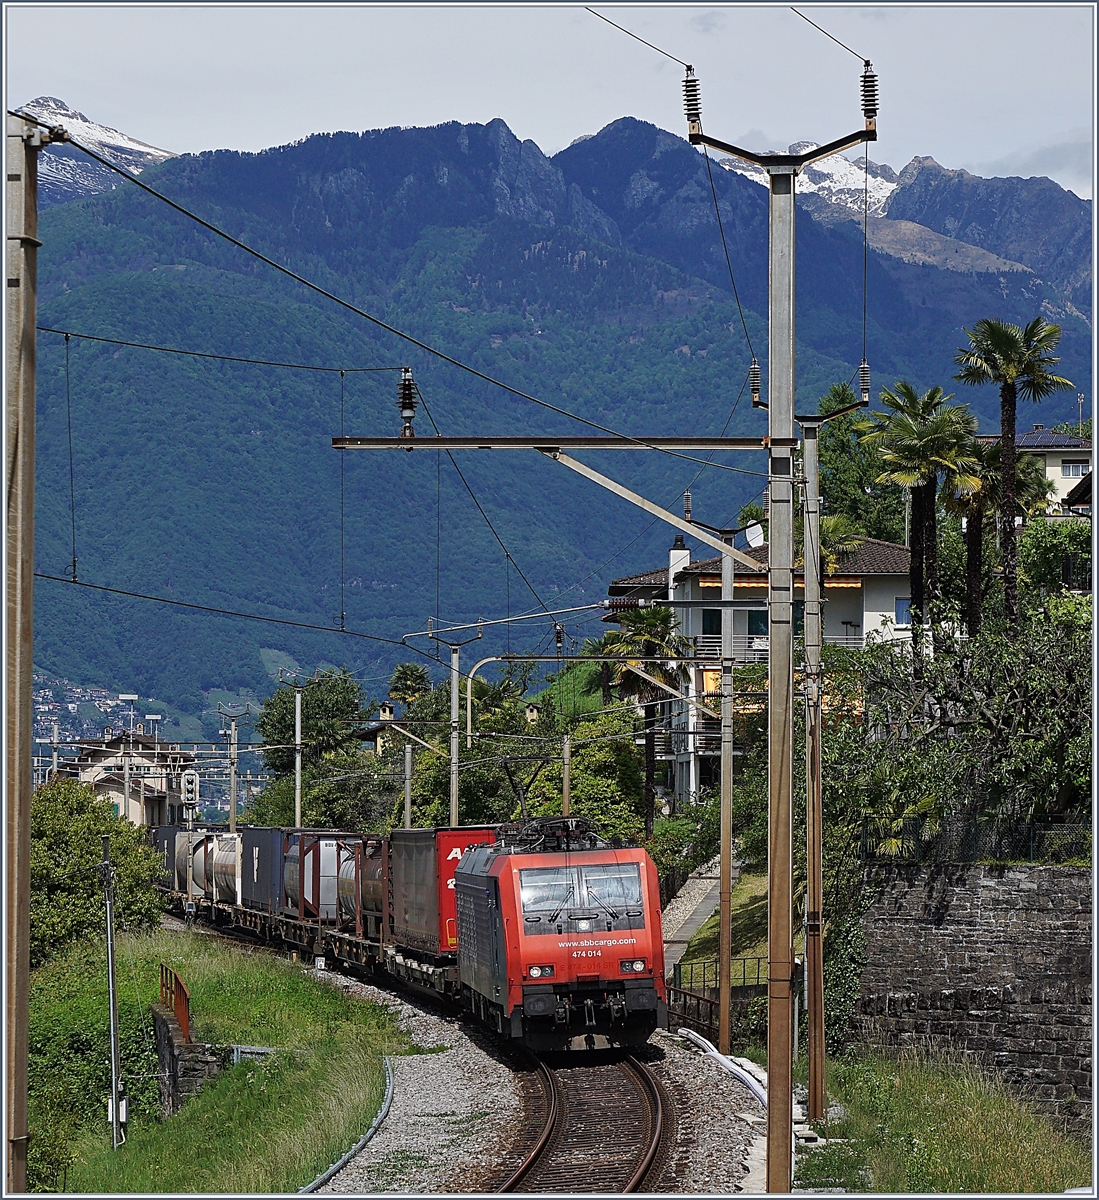 Die SBB Re 474 014 mit einem Güterzug auf der Fahrt Richtung Luino kurz nach dem im Hintergrund zu sehenden Bahnhof San Nazzaro.
20. Mai 2017